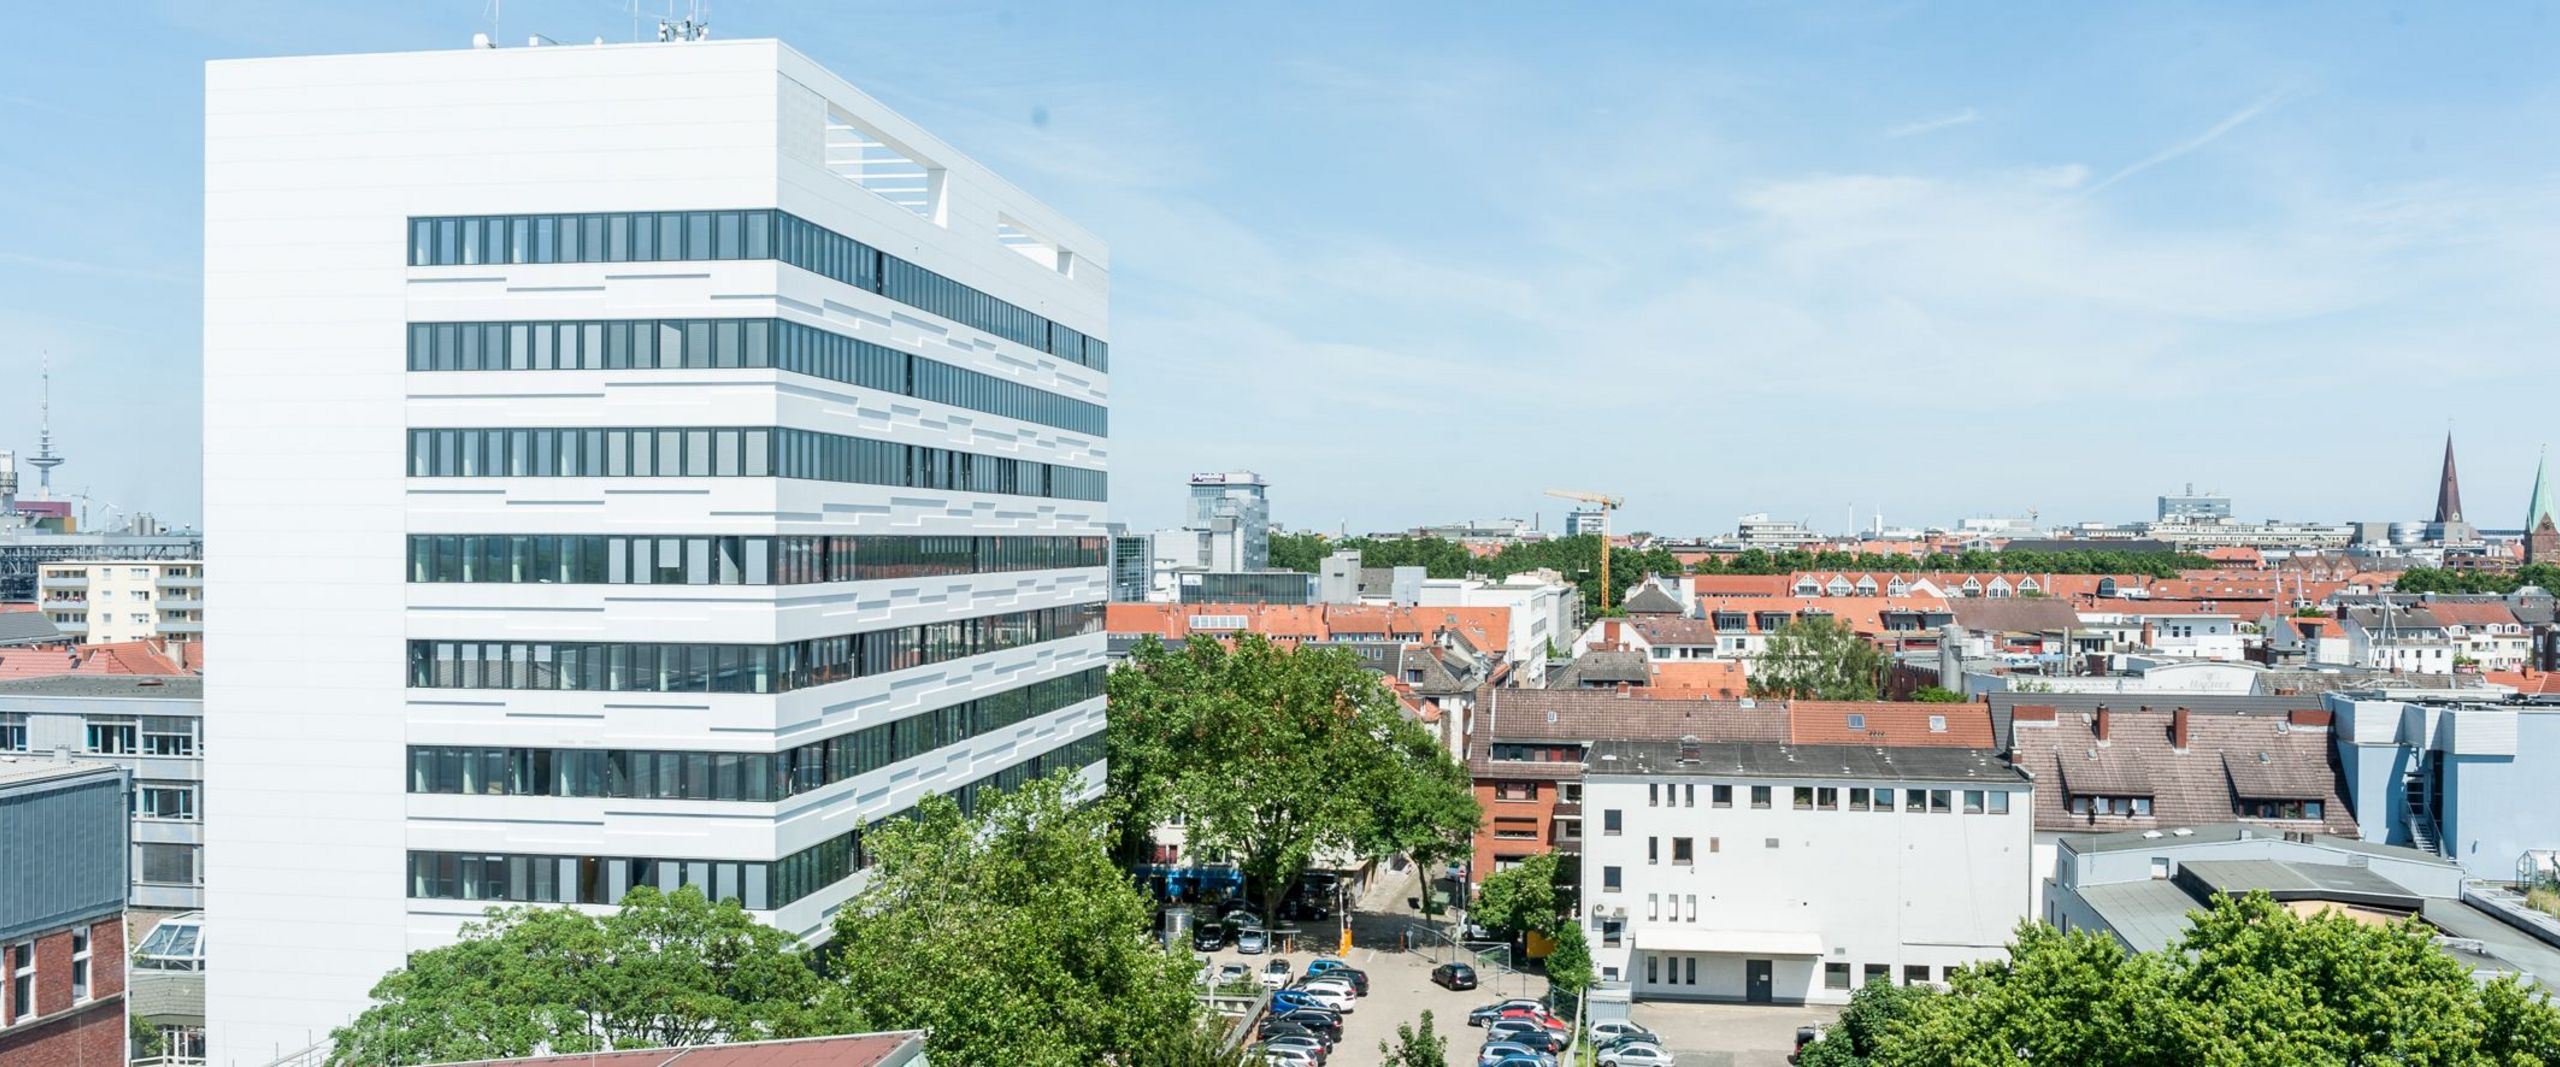 Auf dem Bild ist das AB-Gebäude des Campus Neustadtswall zusehen. Das Foto ist aus der Luft aufgenommen, sodass man außerdem noch blauen Himmel, grüne Bäume und einige Nebengebäude und den Parkplatz erkennen kann. 